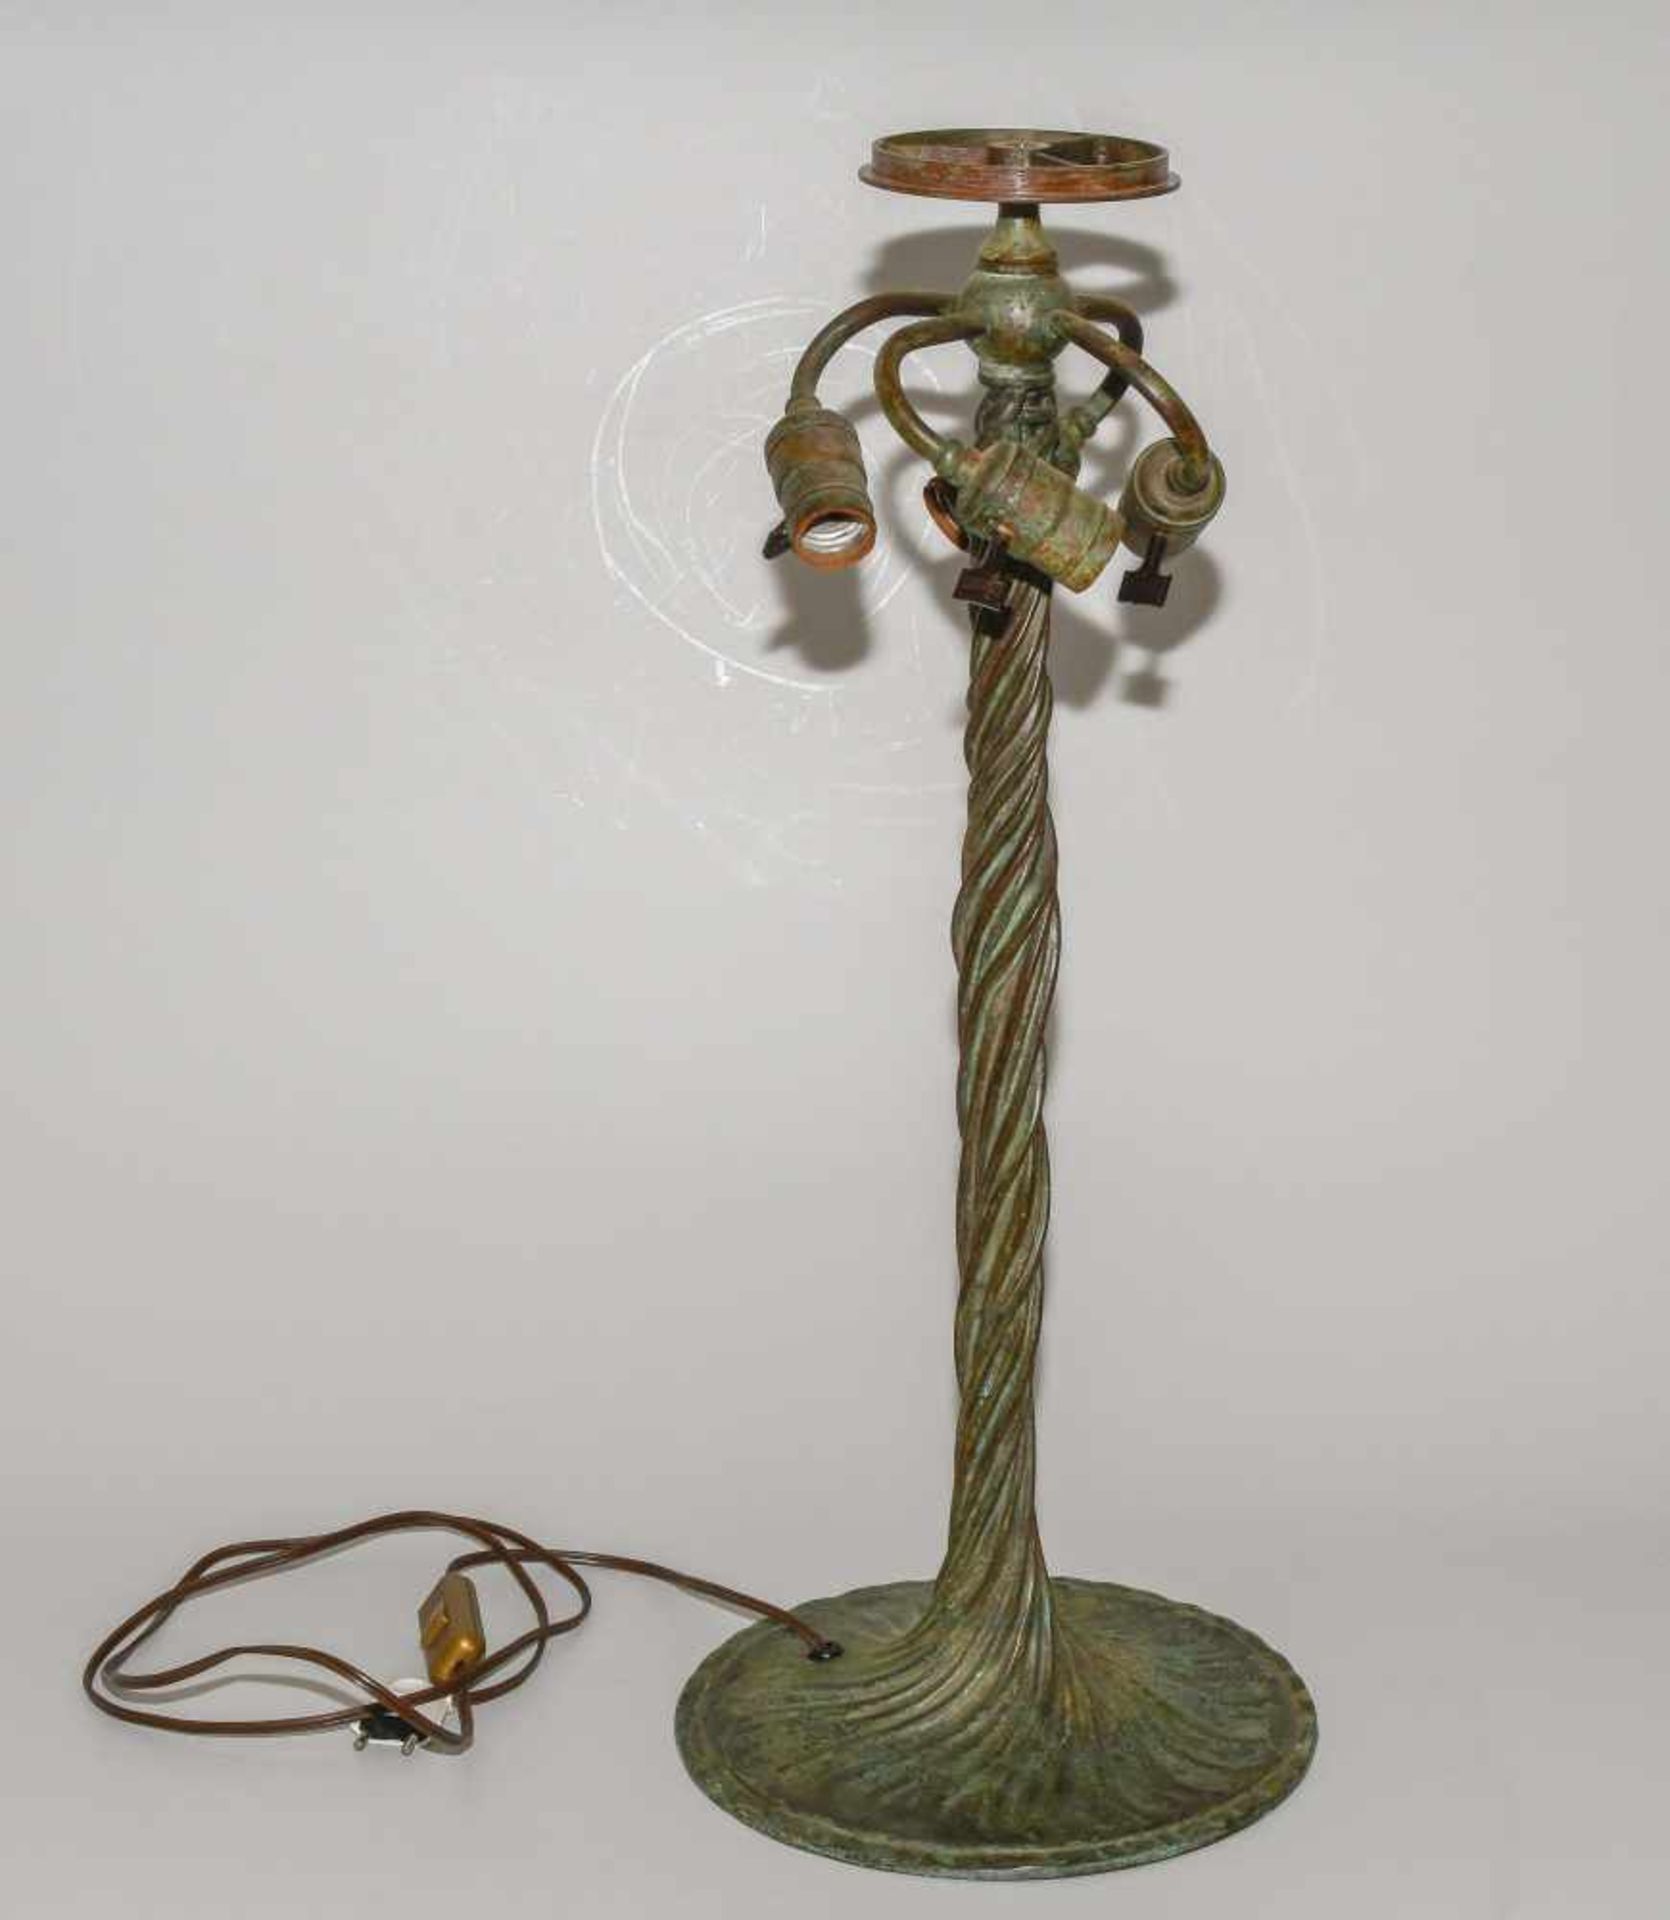 Tiffany Studios New YorkTischlampe "Poppy". Schirm aus "leaded Glass", weisser Mohn mit Blättern, - Image 11 of 24